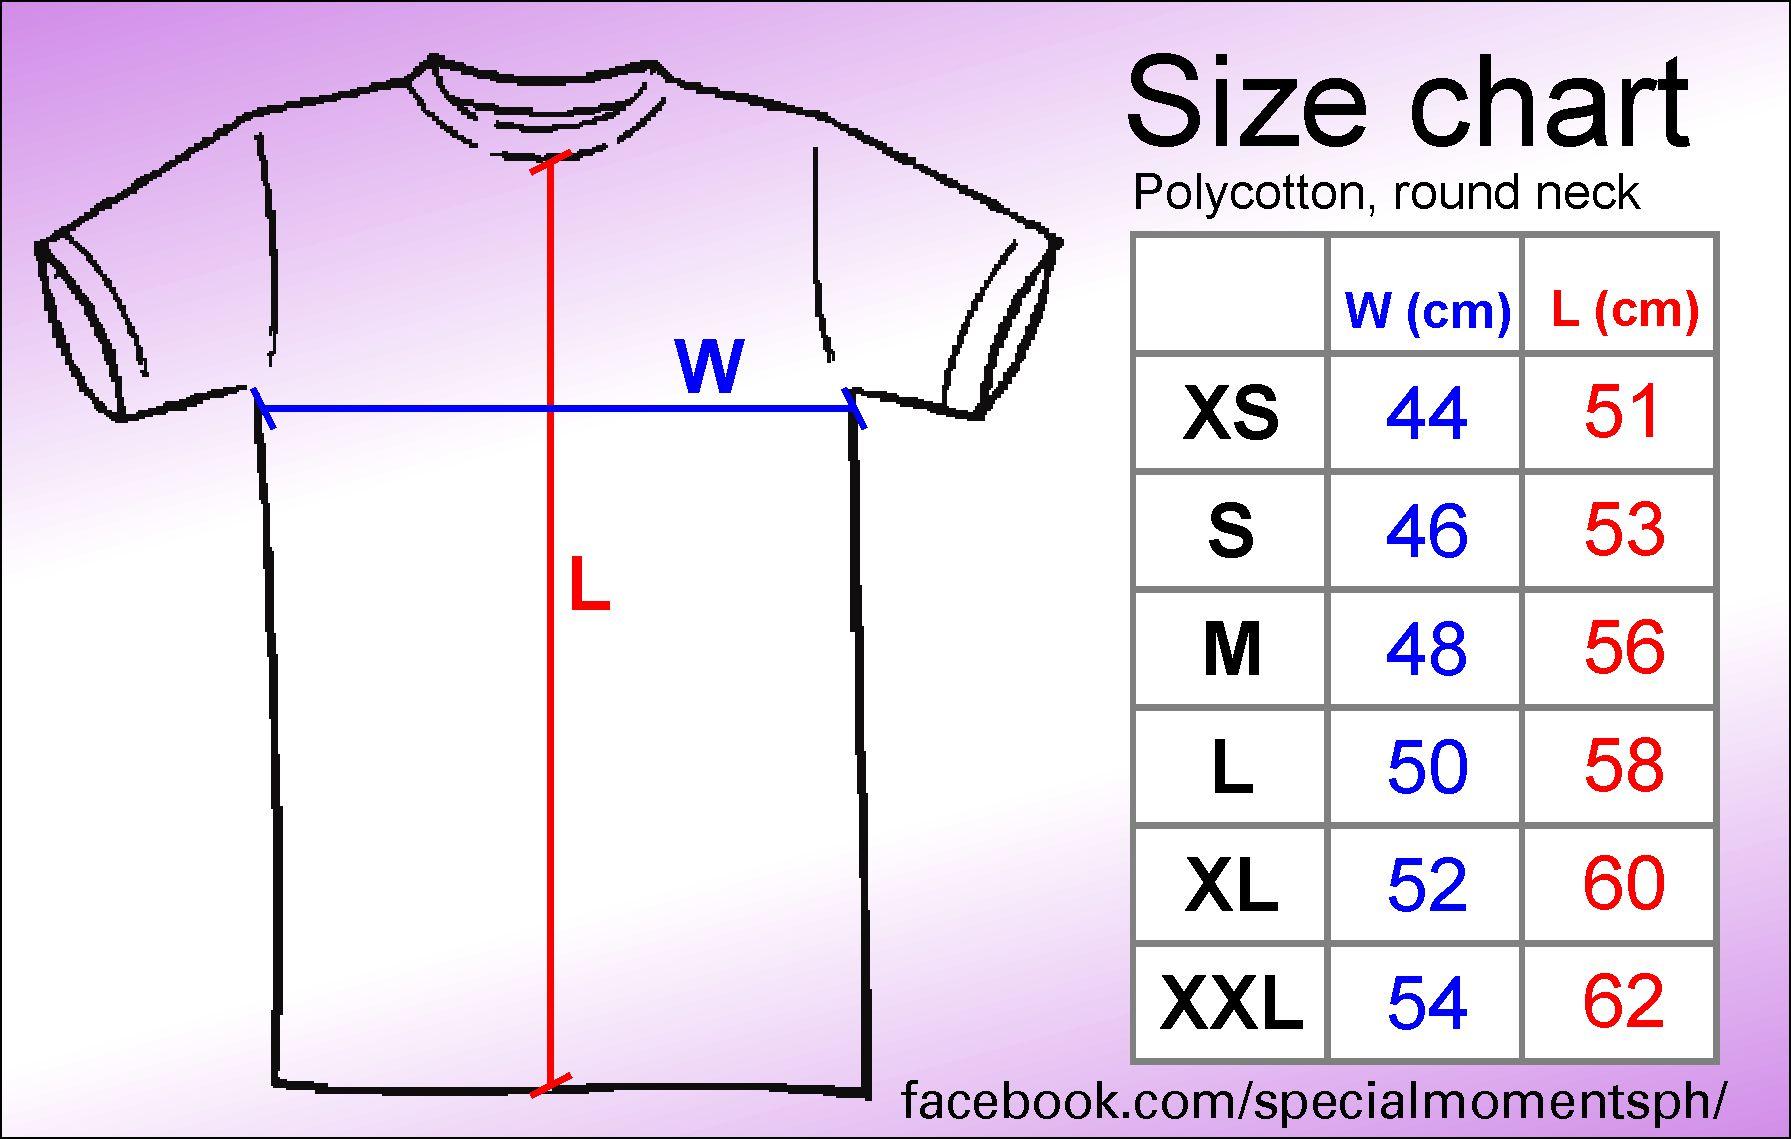 Softex Size Chart